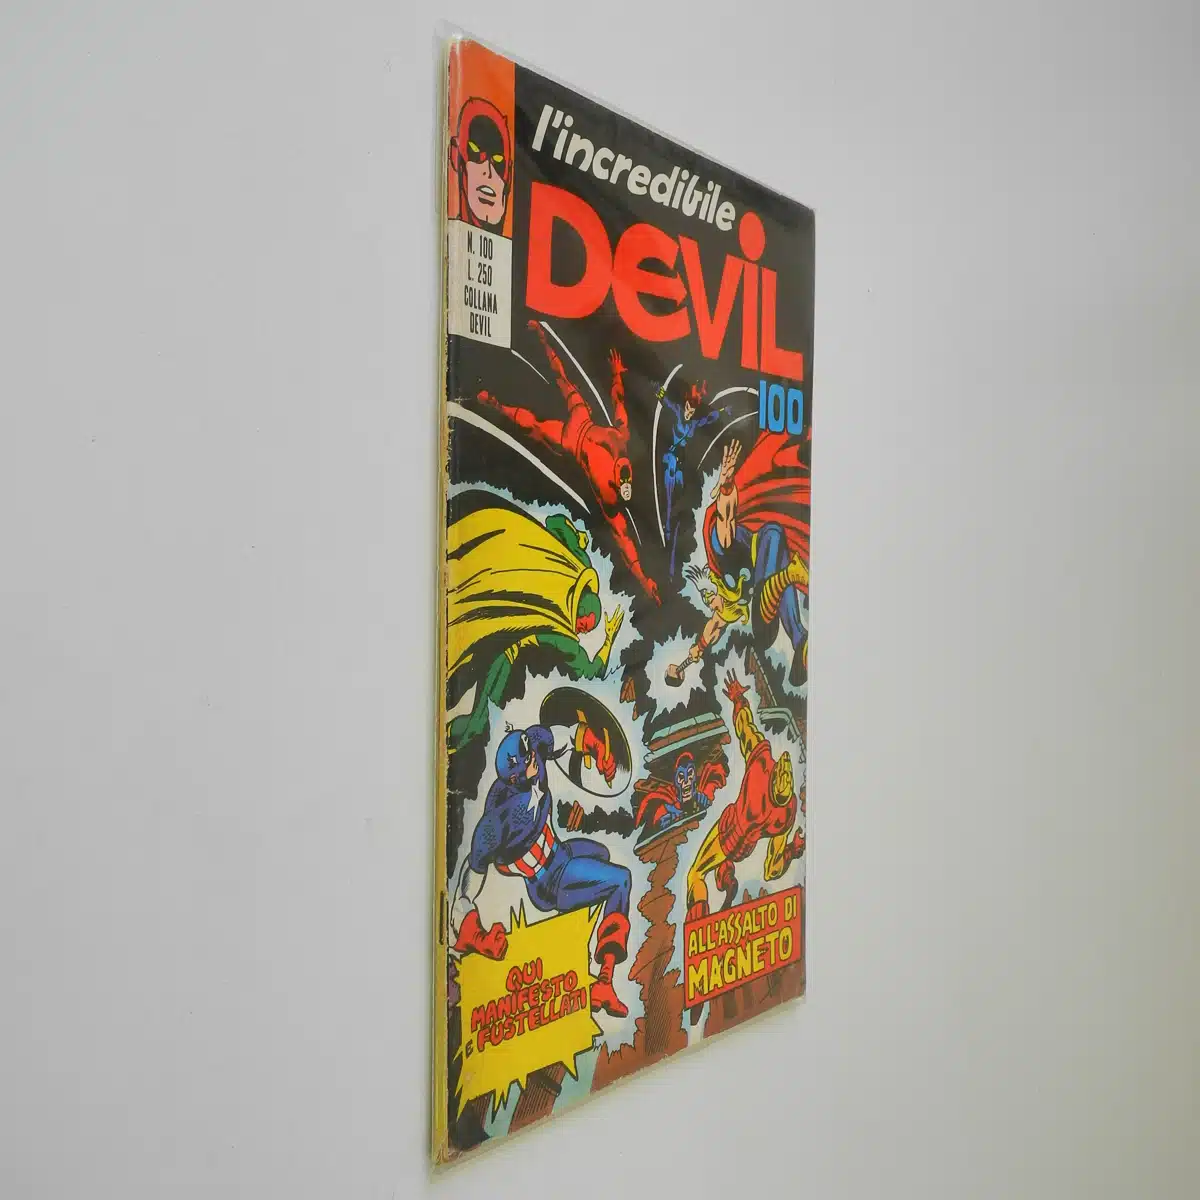 L’Incredibile Devil n. 100 All’assalto di Magneto